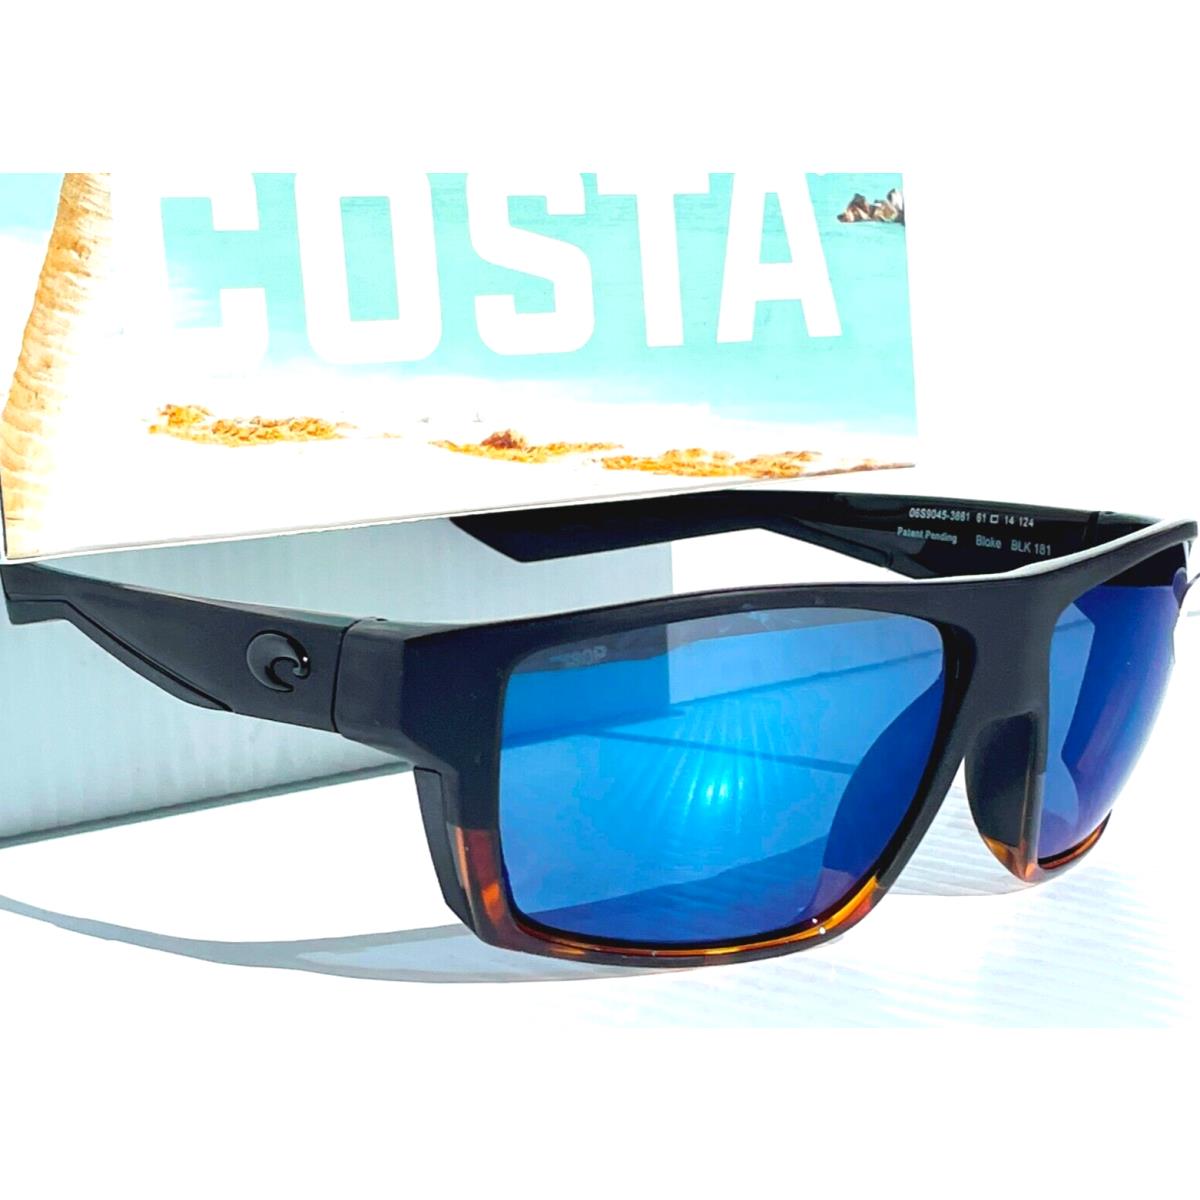 Costa Del Mar sunglasses Bloke - Frame: Black & Tortoise, Lens: Blue 8